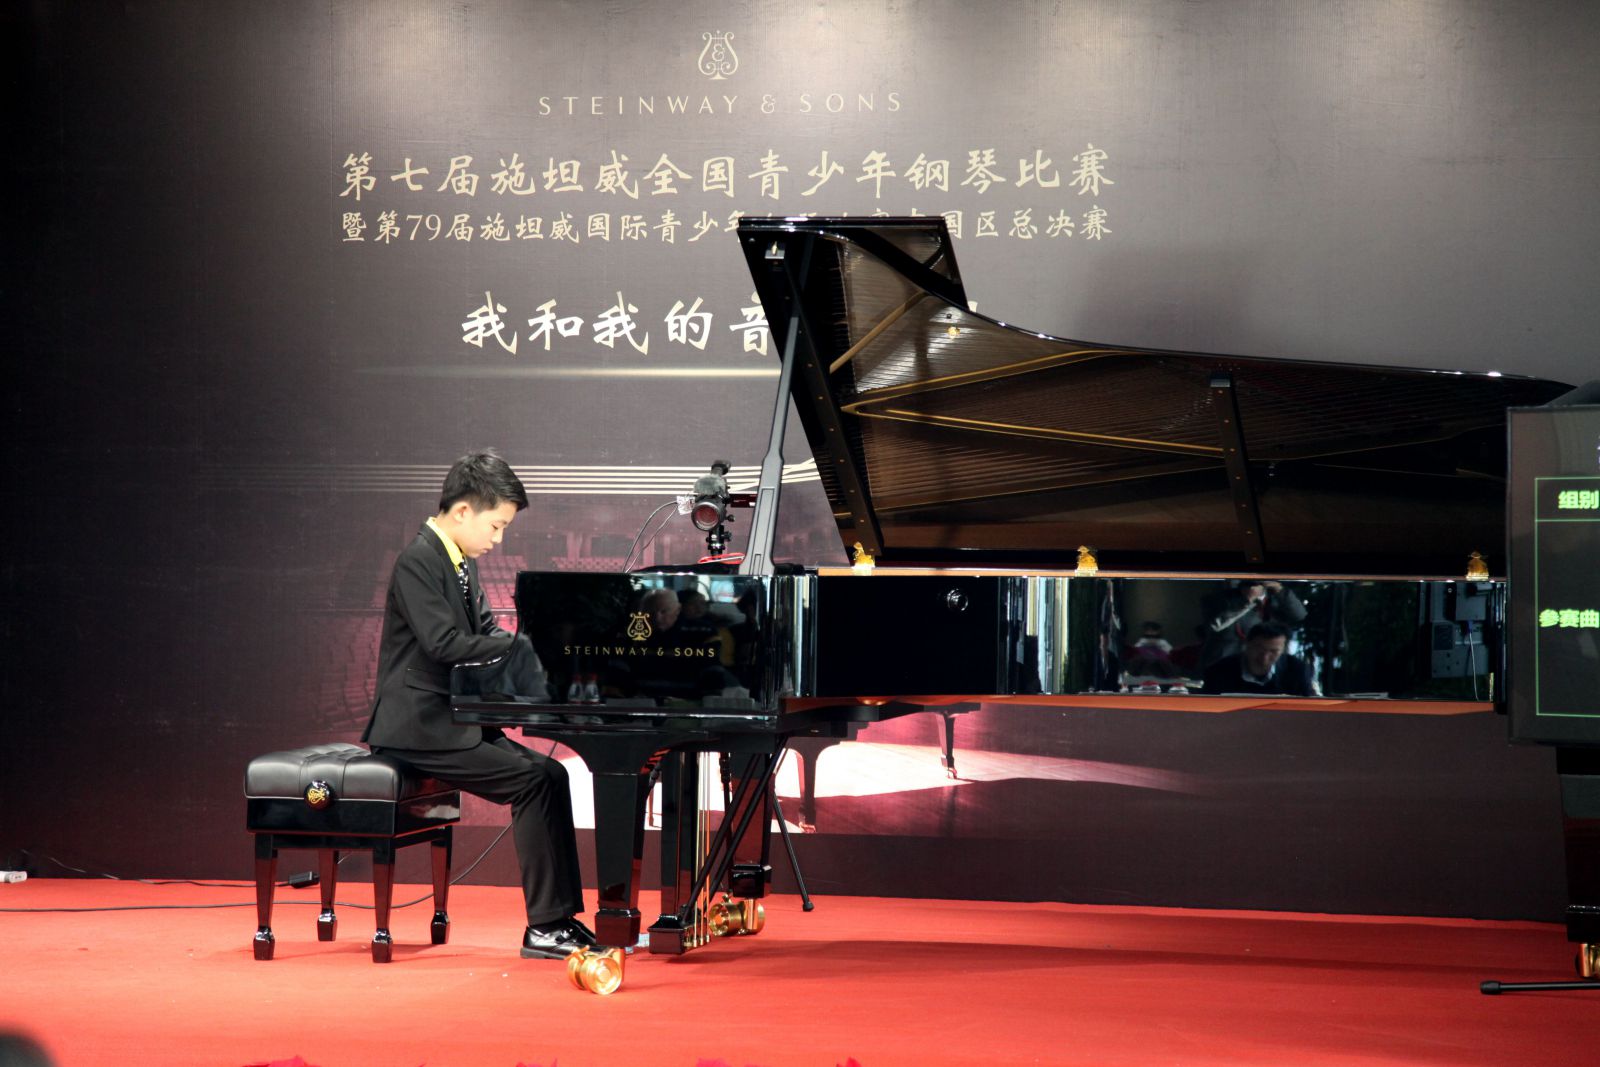 吴芮（青年钢琴演奏家）中国音乐网百科 - 个人百科 - 中国音乐网